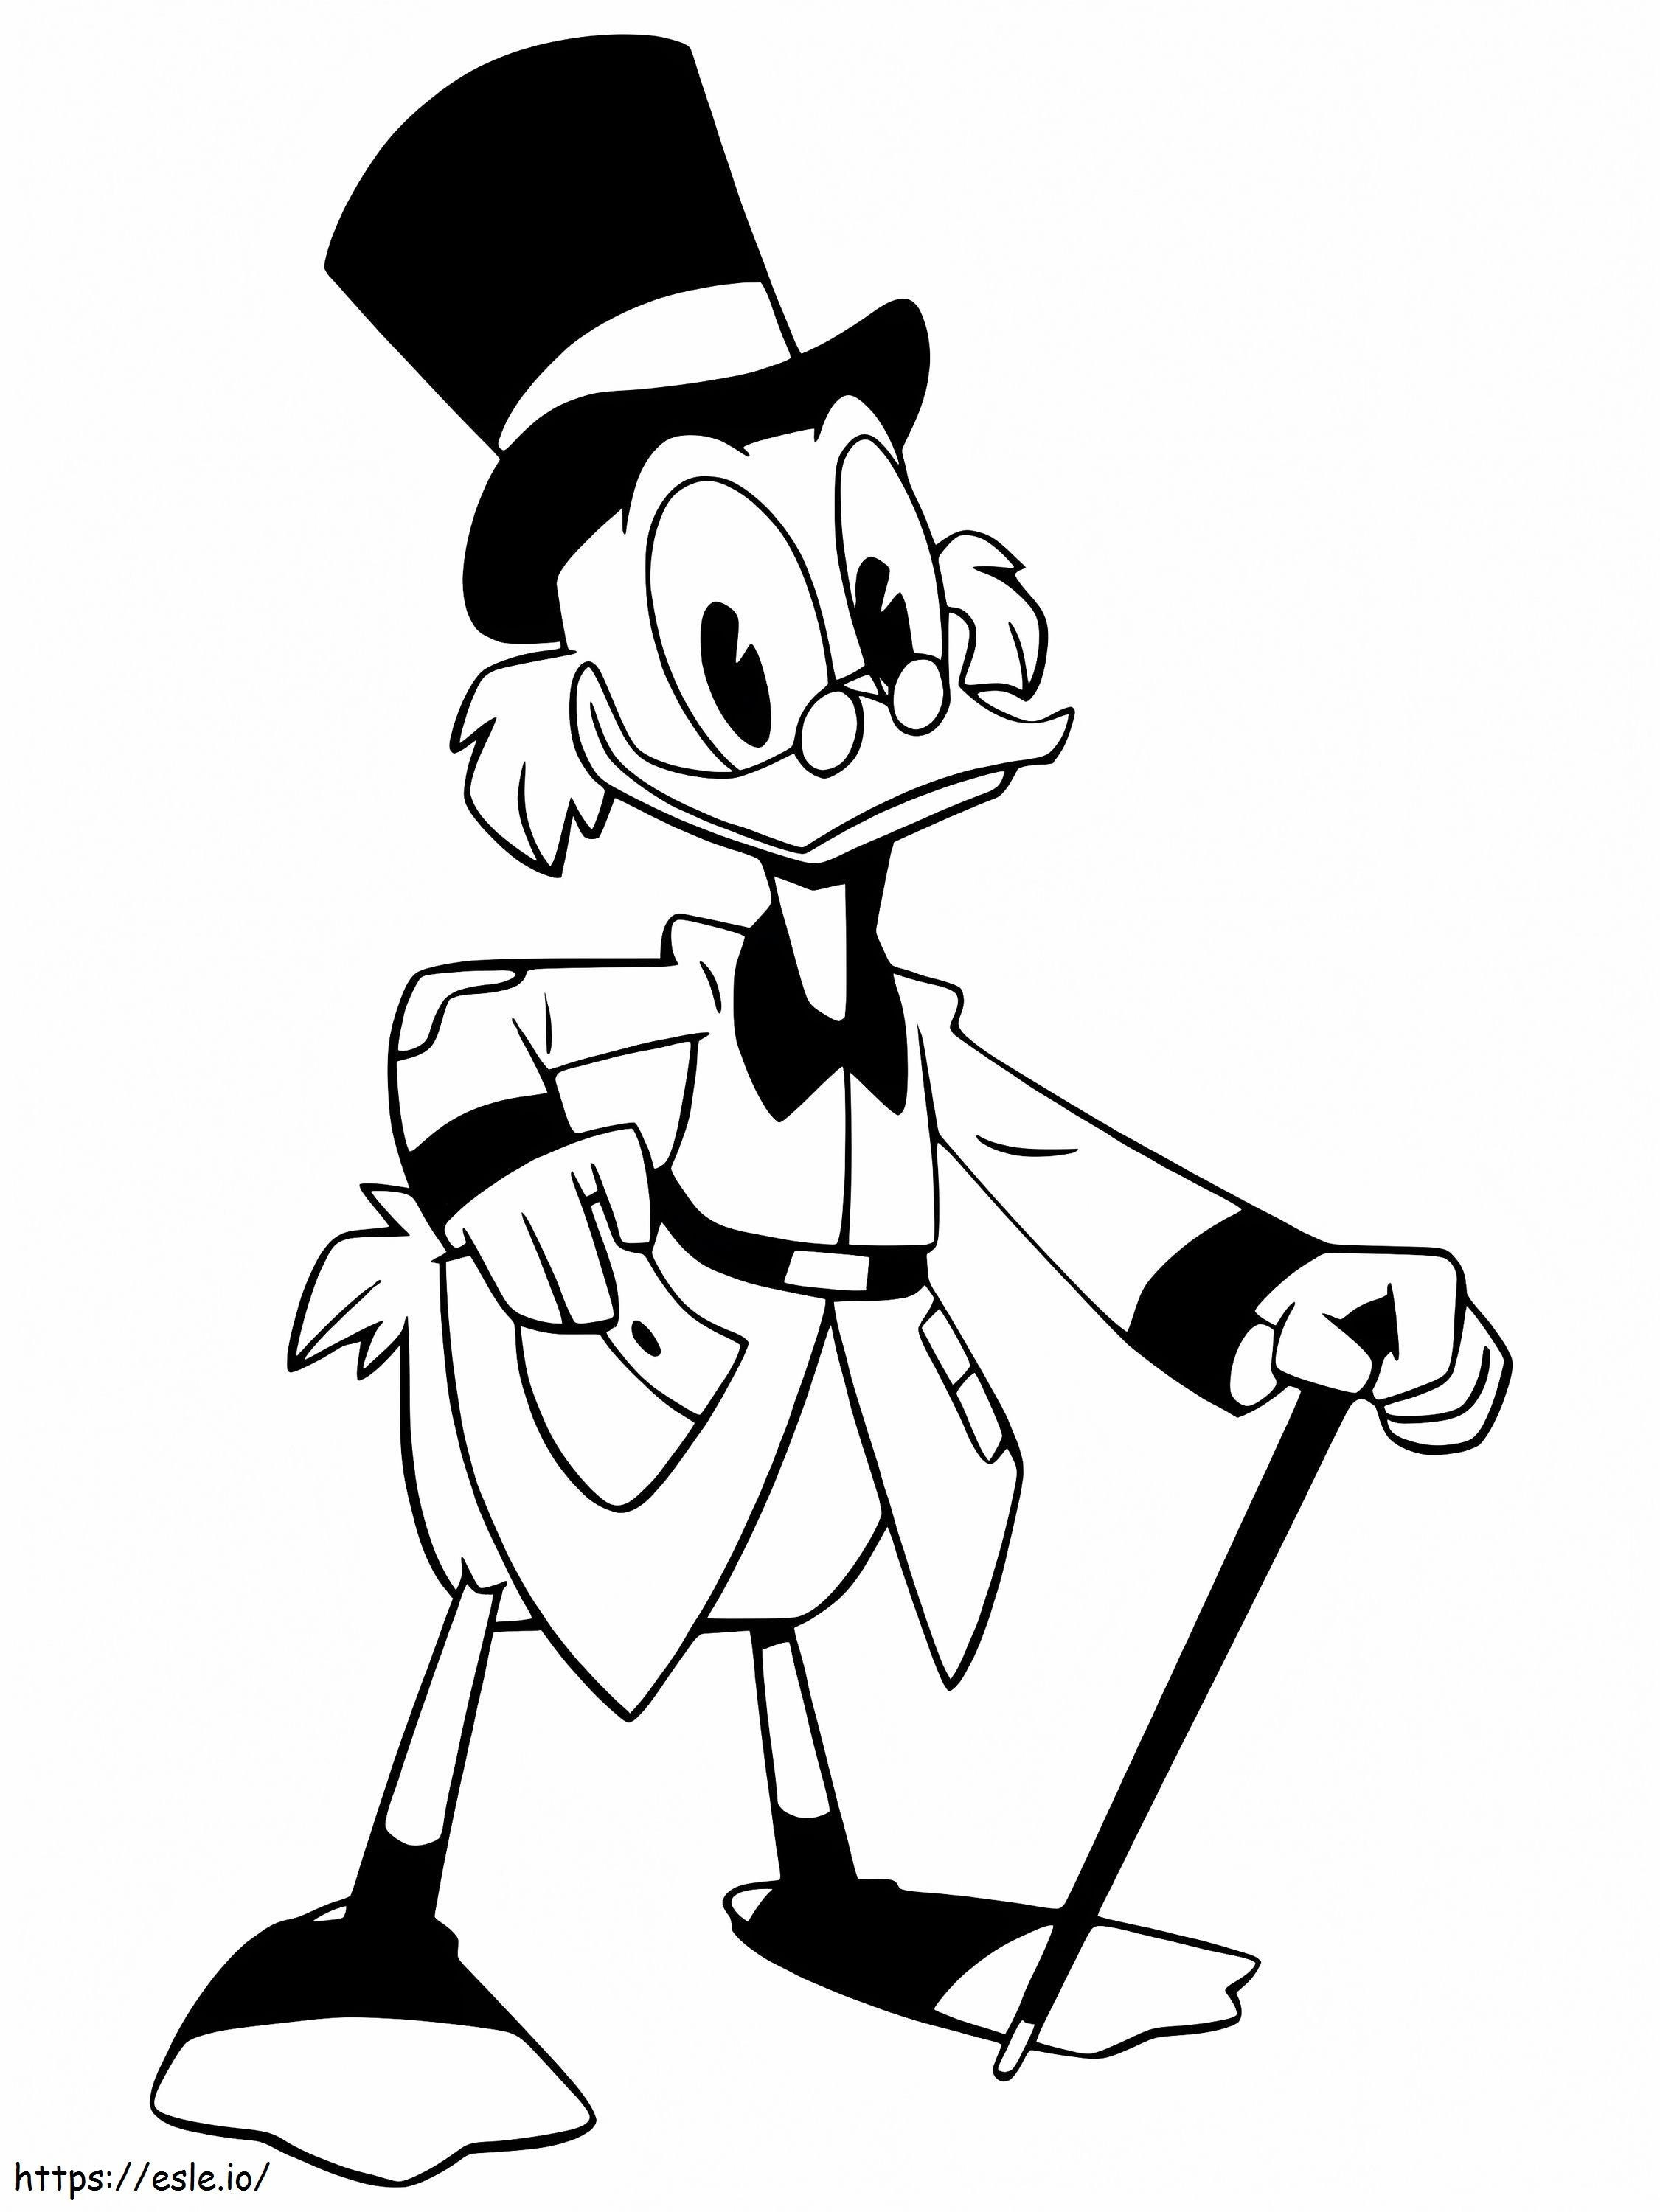 Scrooge McDuck de Ducktales para colorear